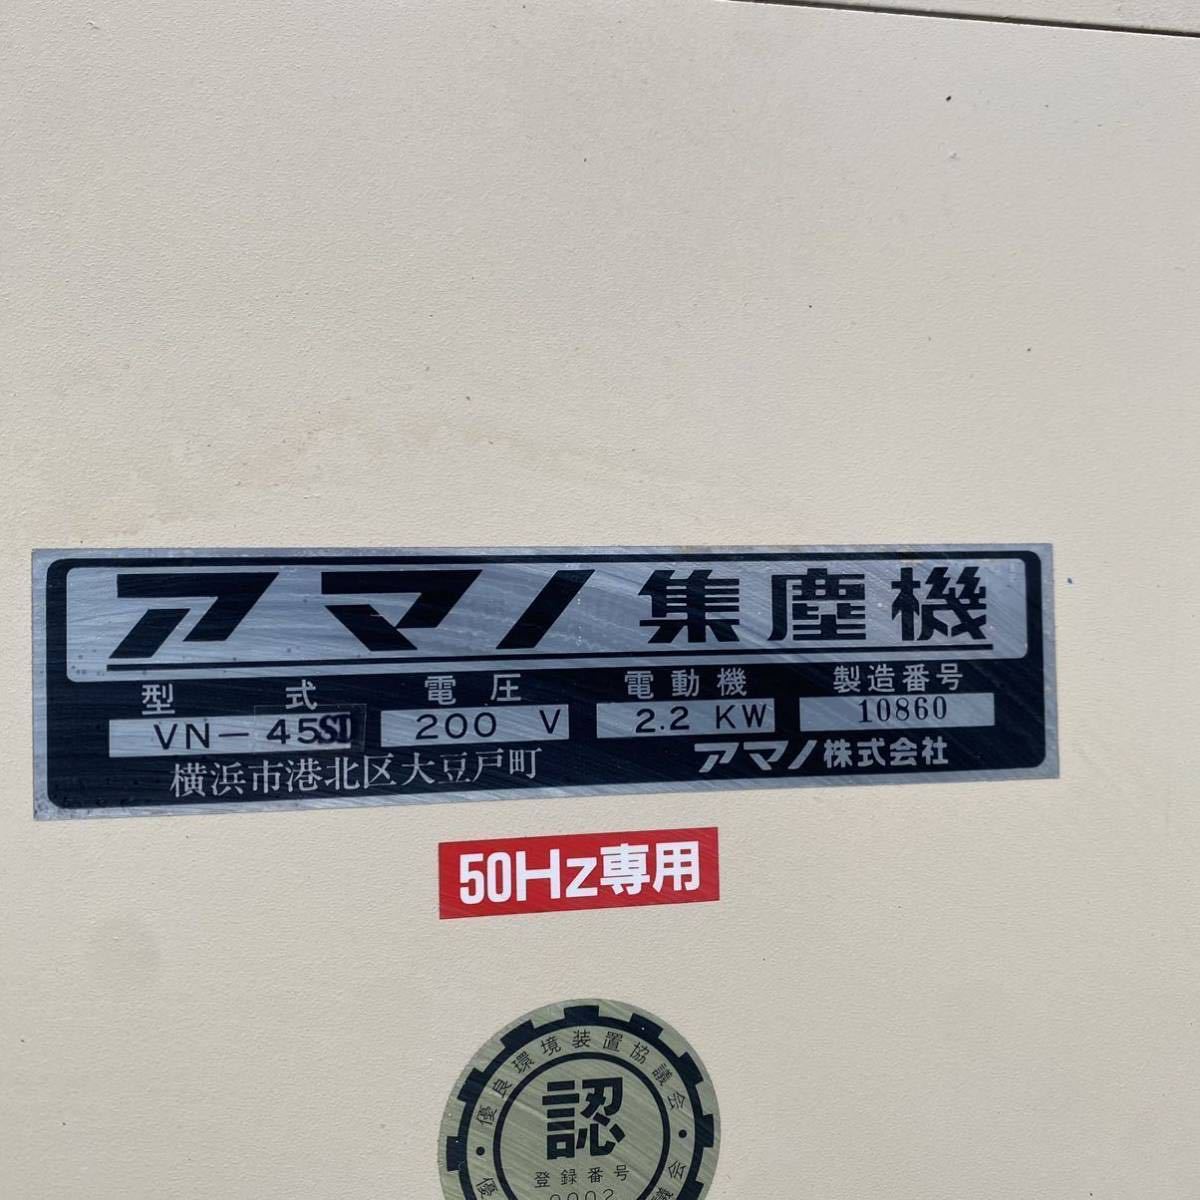 SKT5200 アマノ 集塵機 VN-45ST 200V【動作確認済】_画像3